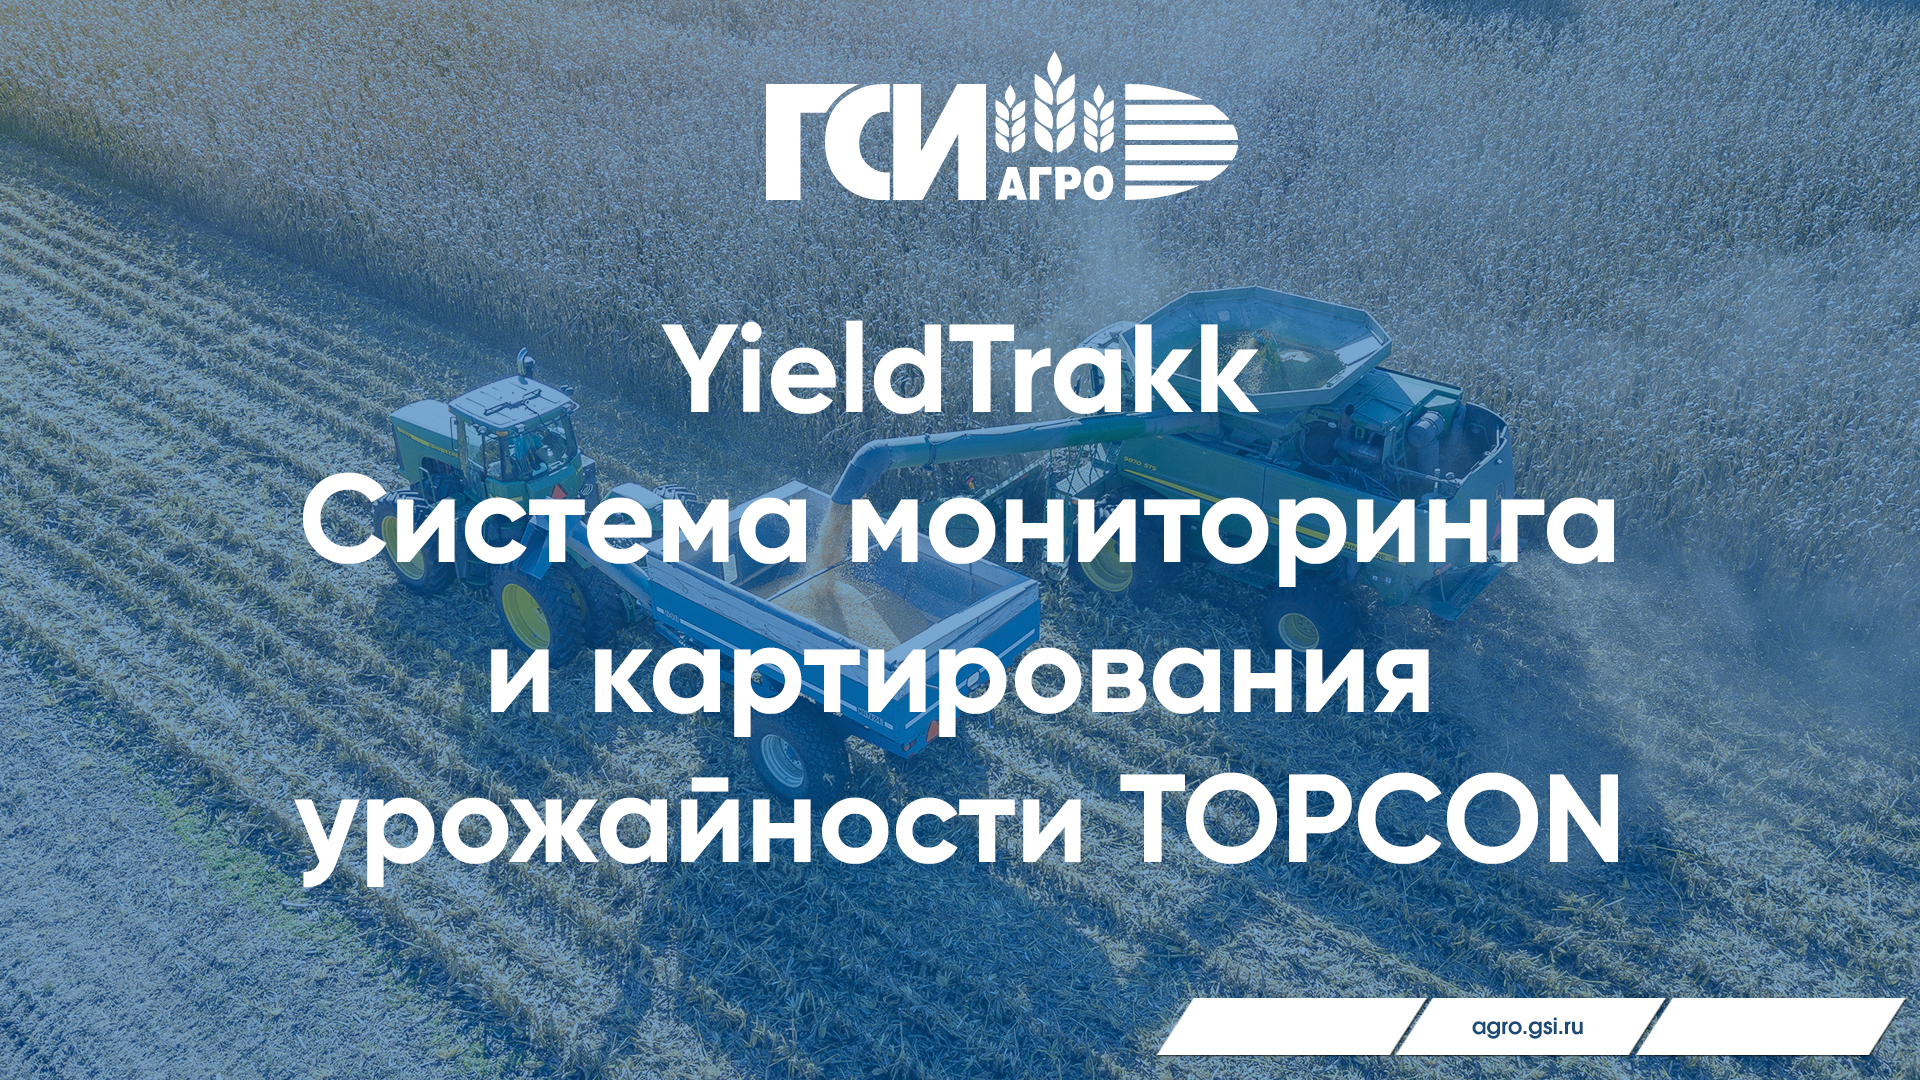 YieldTrakk – система мониторинга и картирования урожайности